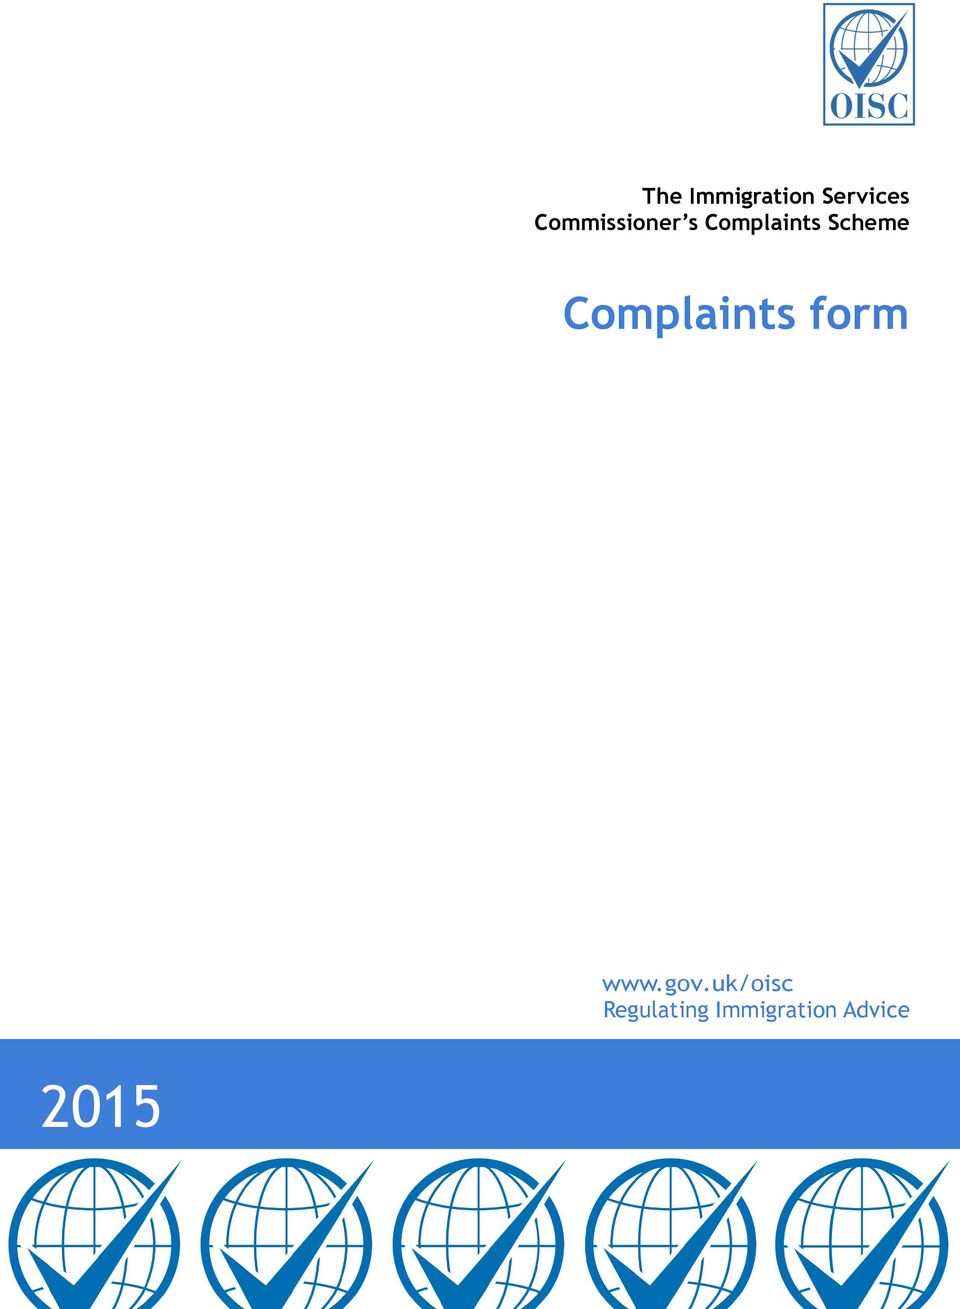 Scheme Complaints form www.gov.